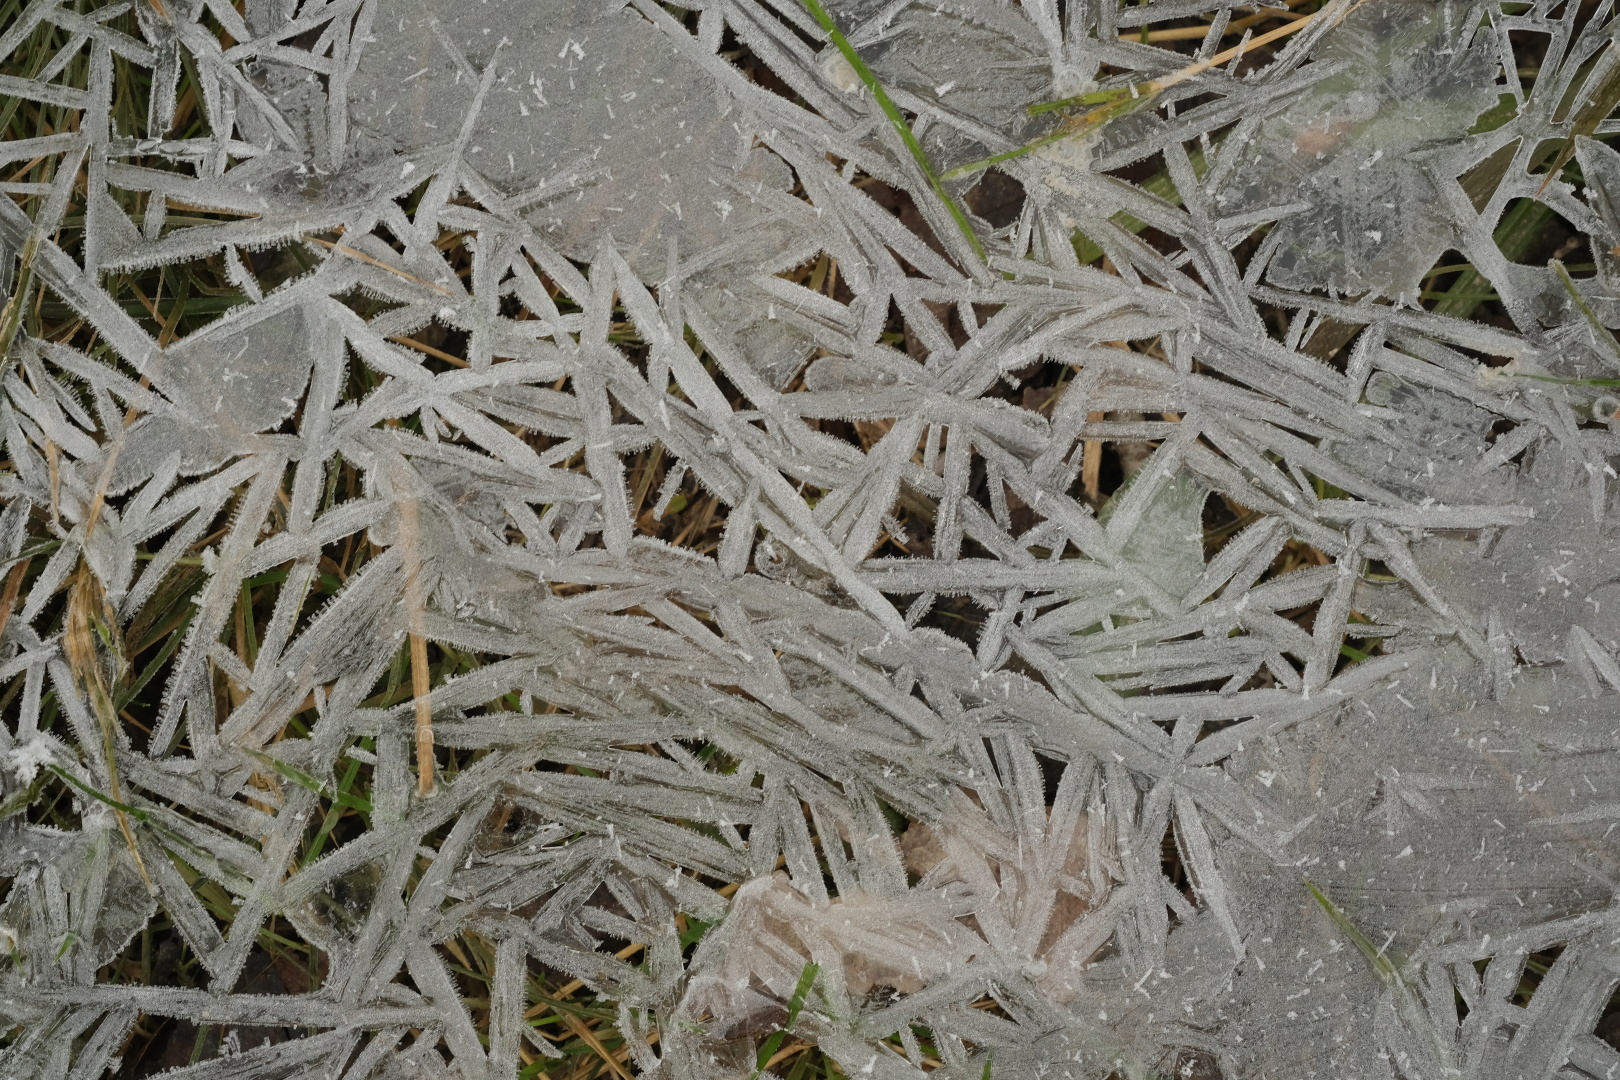 Endlich richtiger Frost! Interessante Eisformationen im ehemals &uuml;berfluteten Gras.